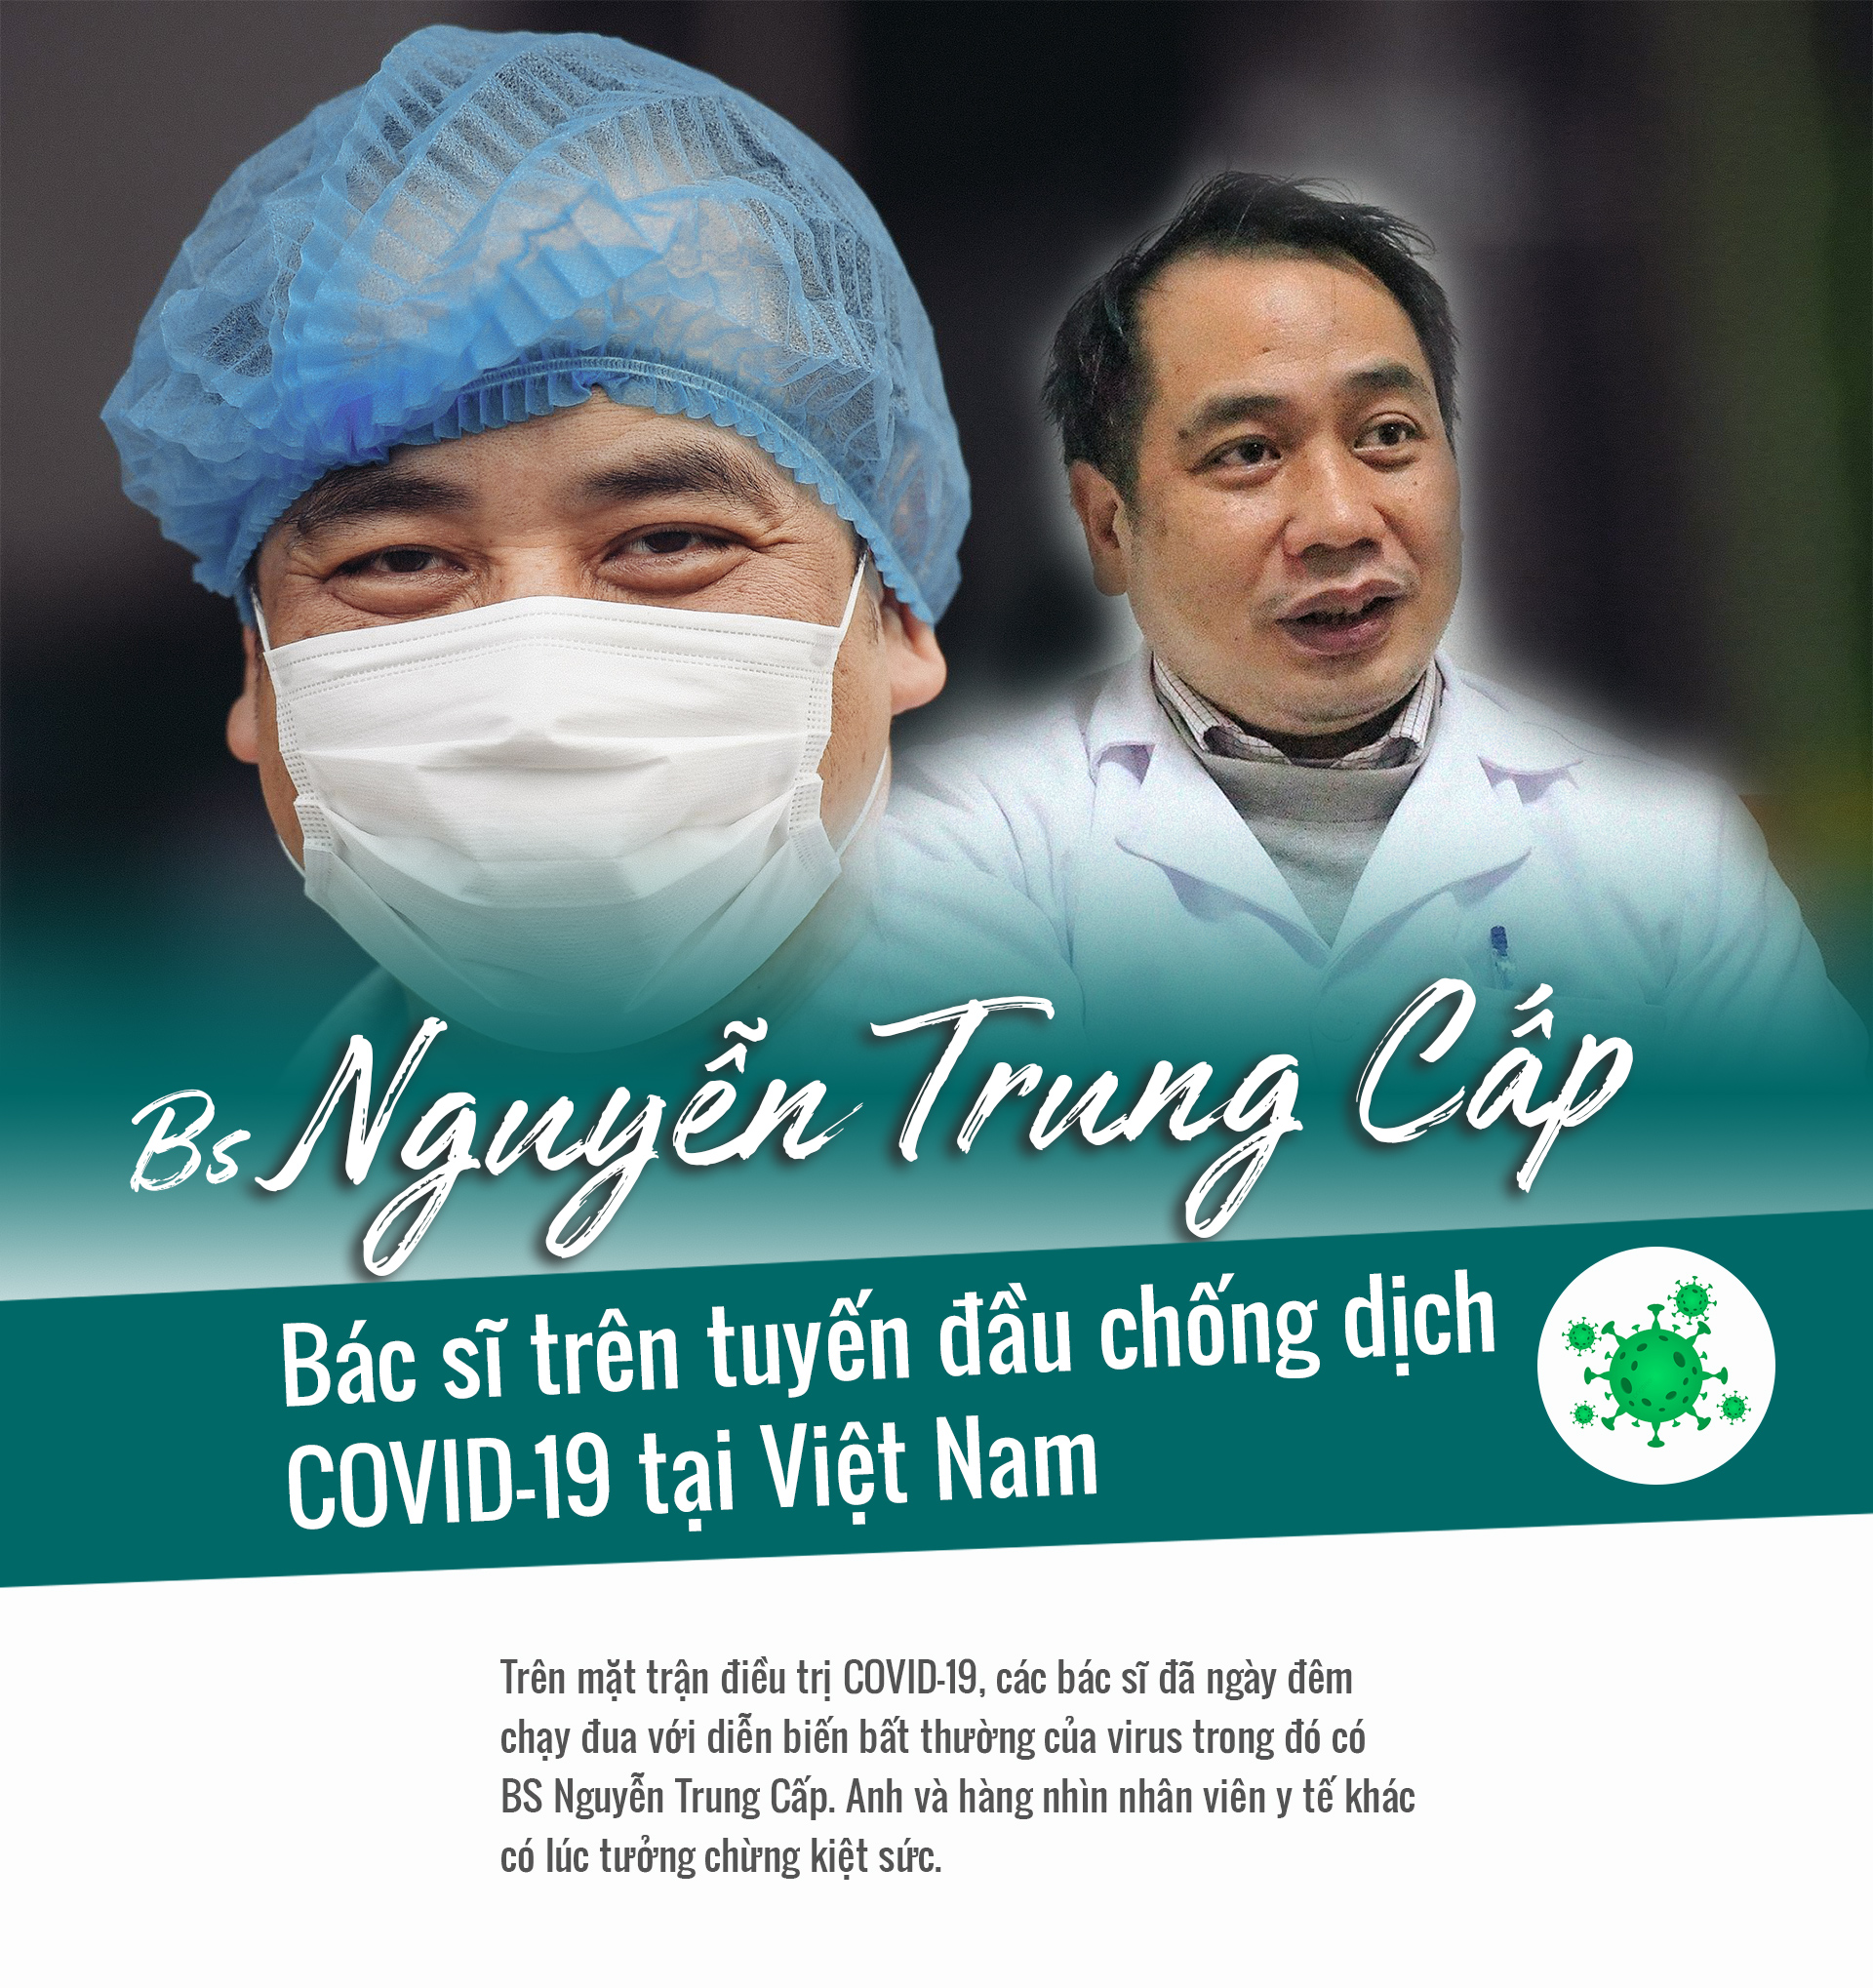 Năm mới trò chuyện cùng bác sĩ trên tuyến đầu chống dịch Nguyễn Trung Cấp - 1